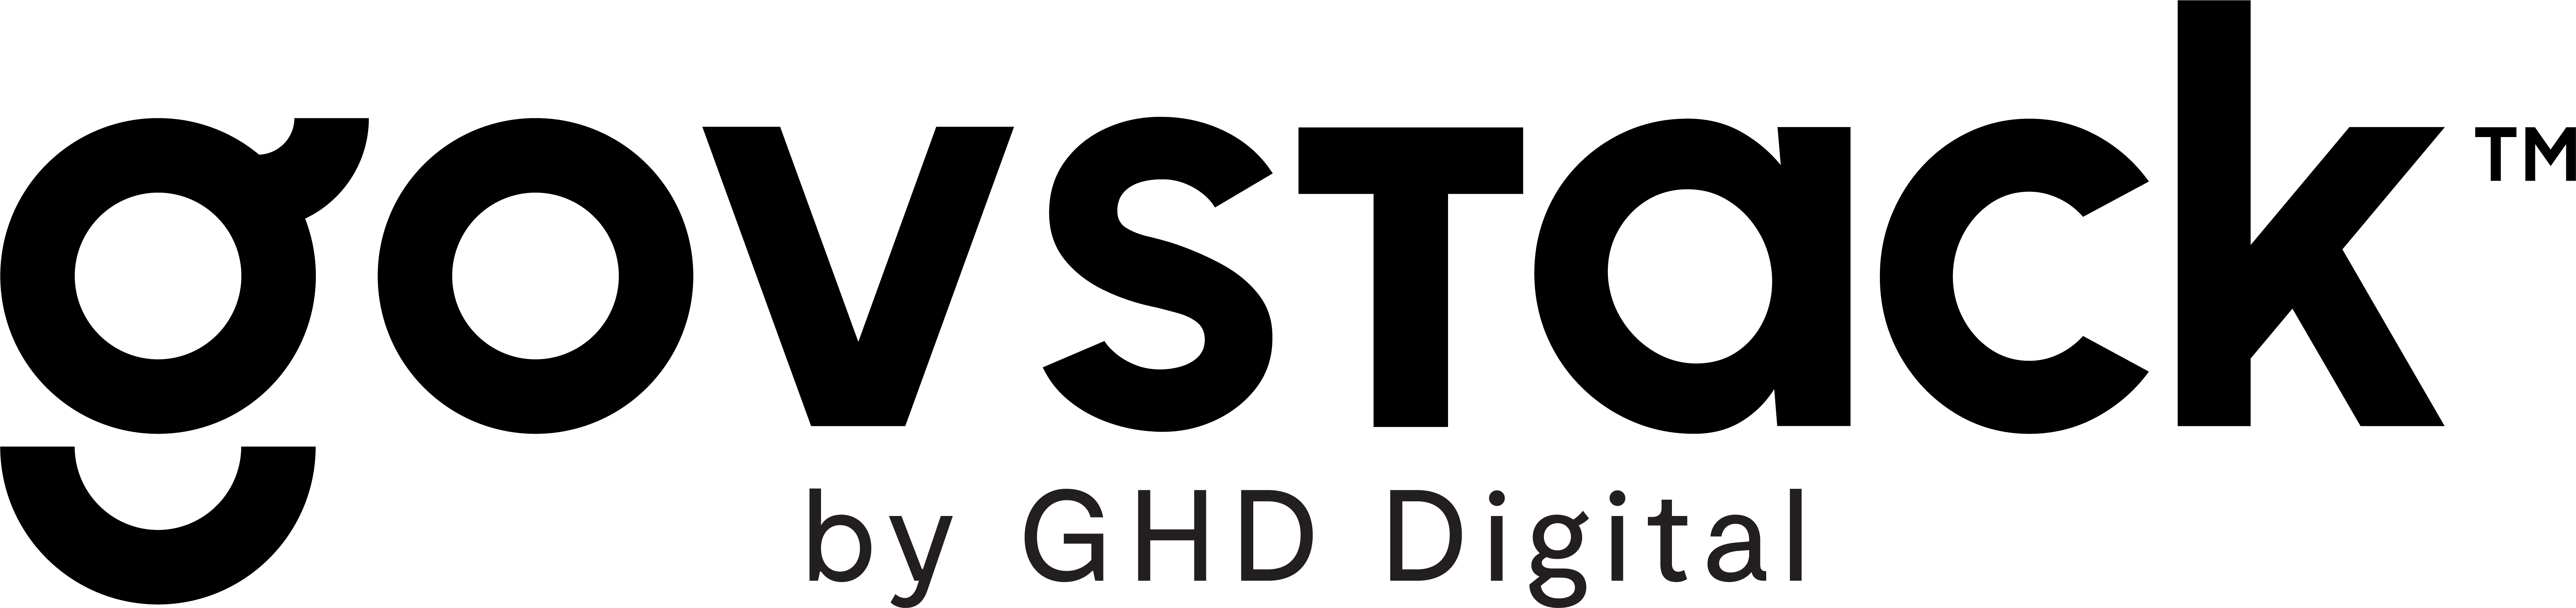 GHD Digital